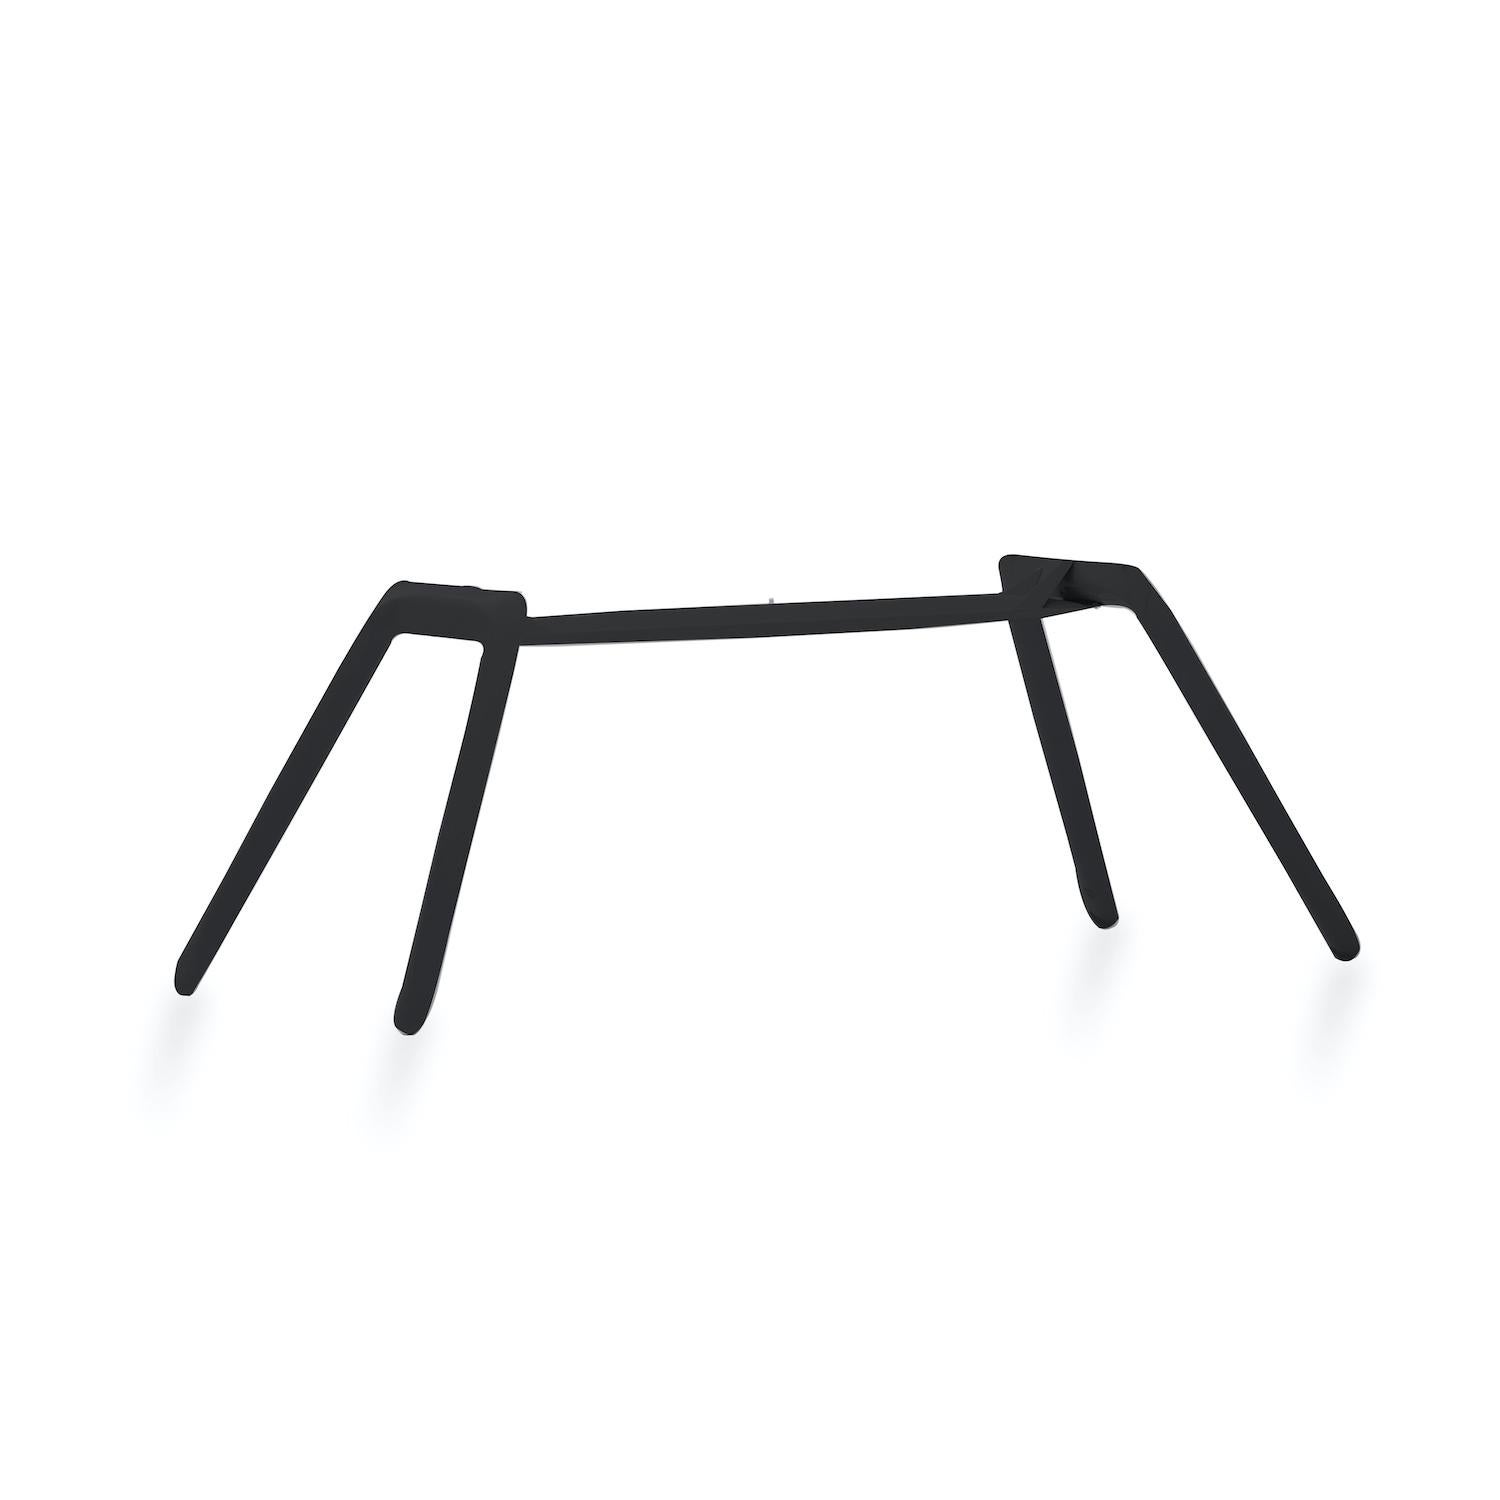 Nogi ist eine einzigartige Konstruktion für Tische. Es kann in verschiedenen Formen und Größen und aus verschiedenen Metallen hergestellt werden.

Der Nogi-Tisch ist in Edelstahl und Kohlenstoffstahl mit den folgenden Oberflächenoptionen